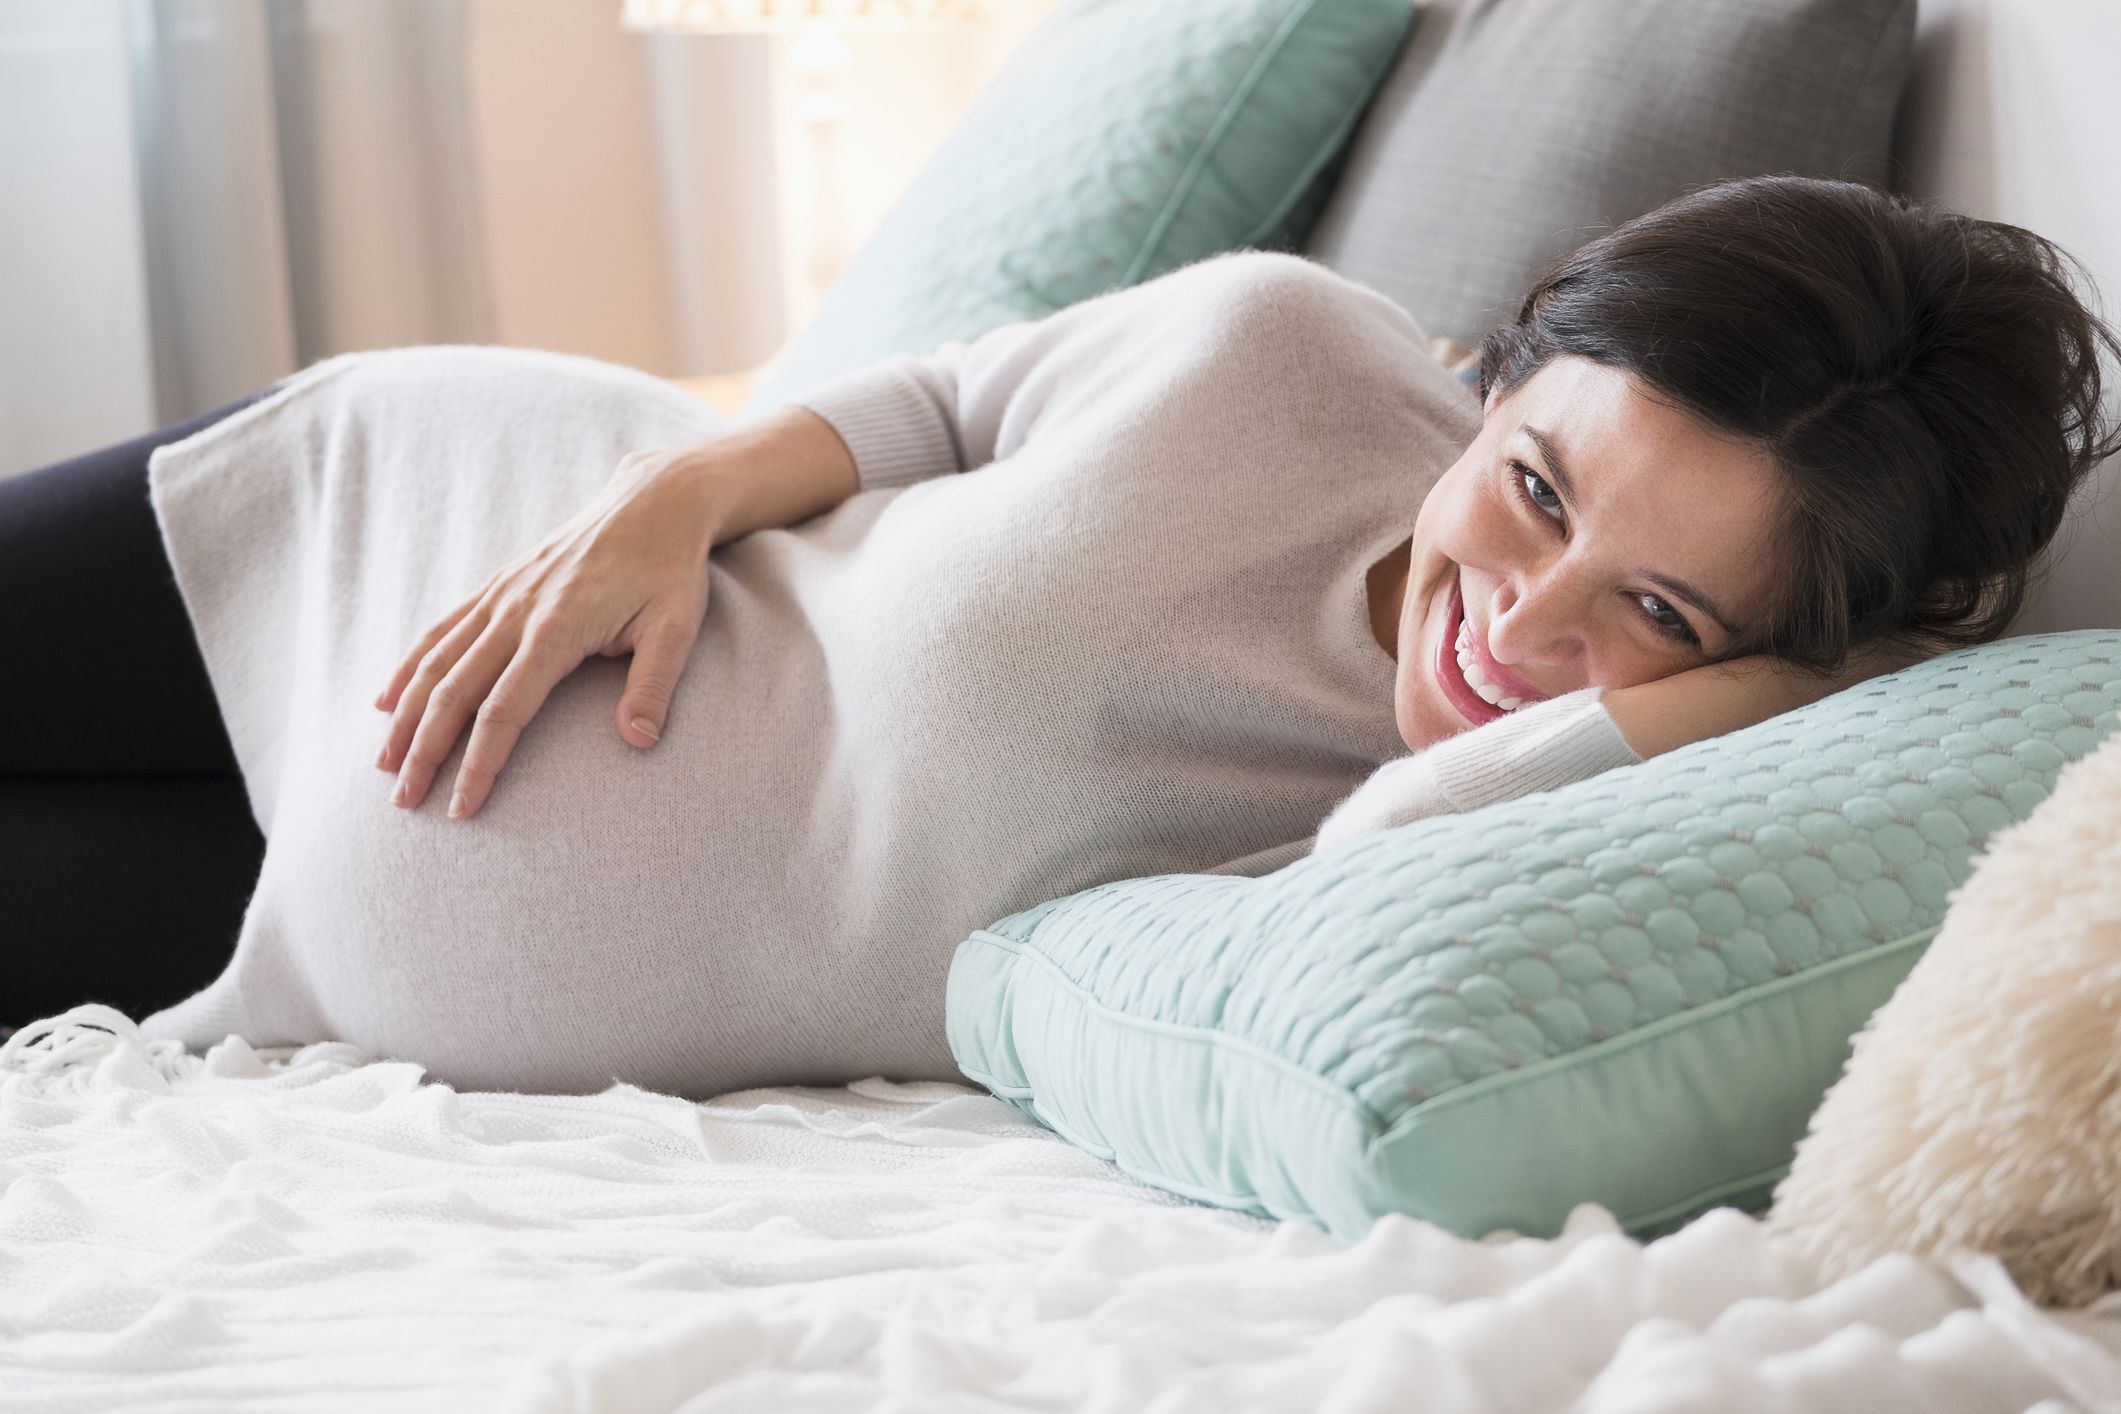 Le mamme surrogate al World Center of Baby sono inestimabili